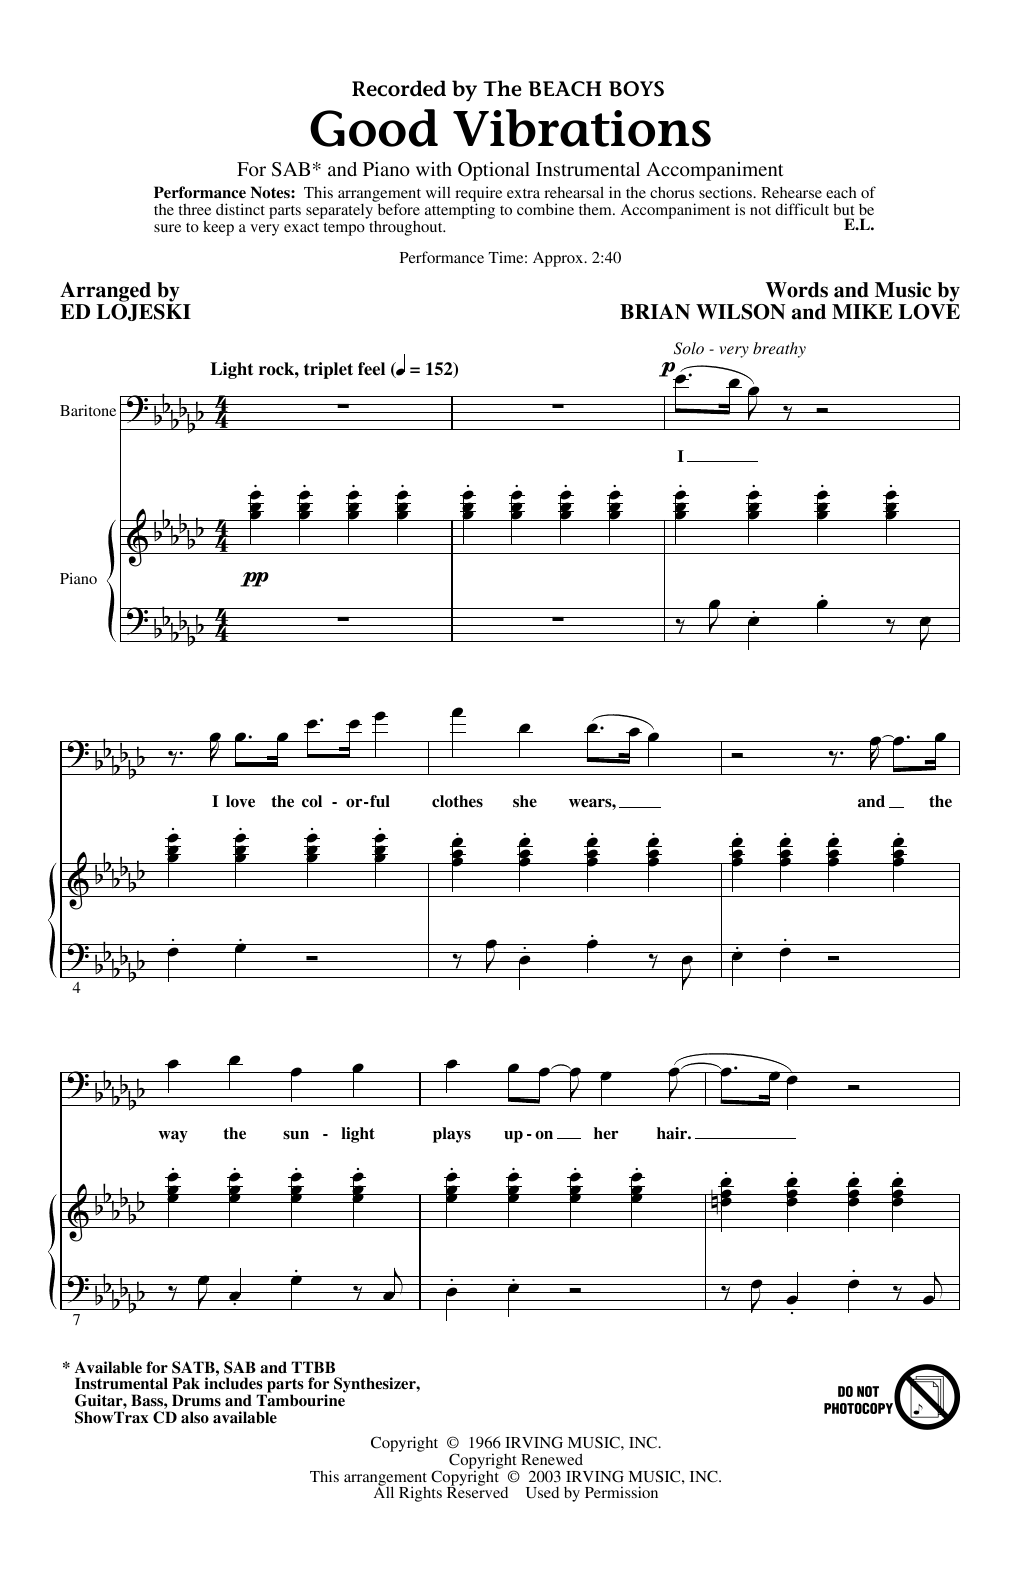 The Beach Boys Good Vibrations (arr. Ed Lojeski) sheet music notes and chords arranged for SATB Choir